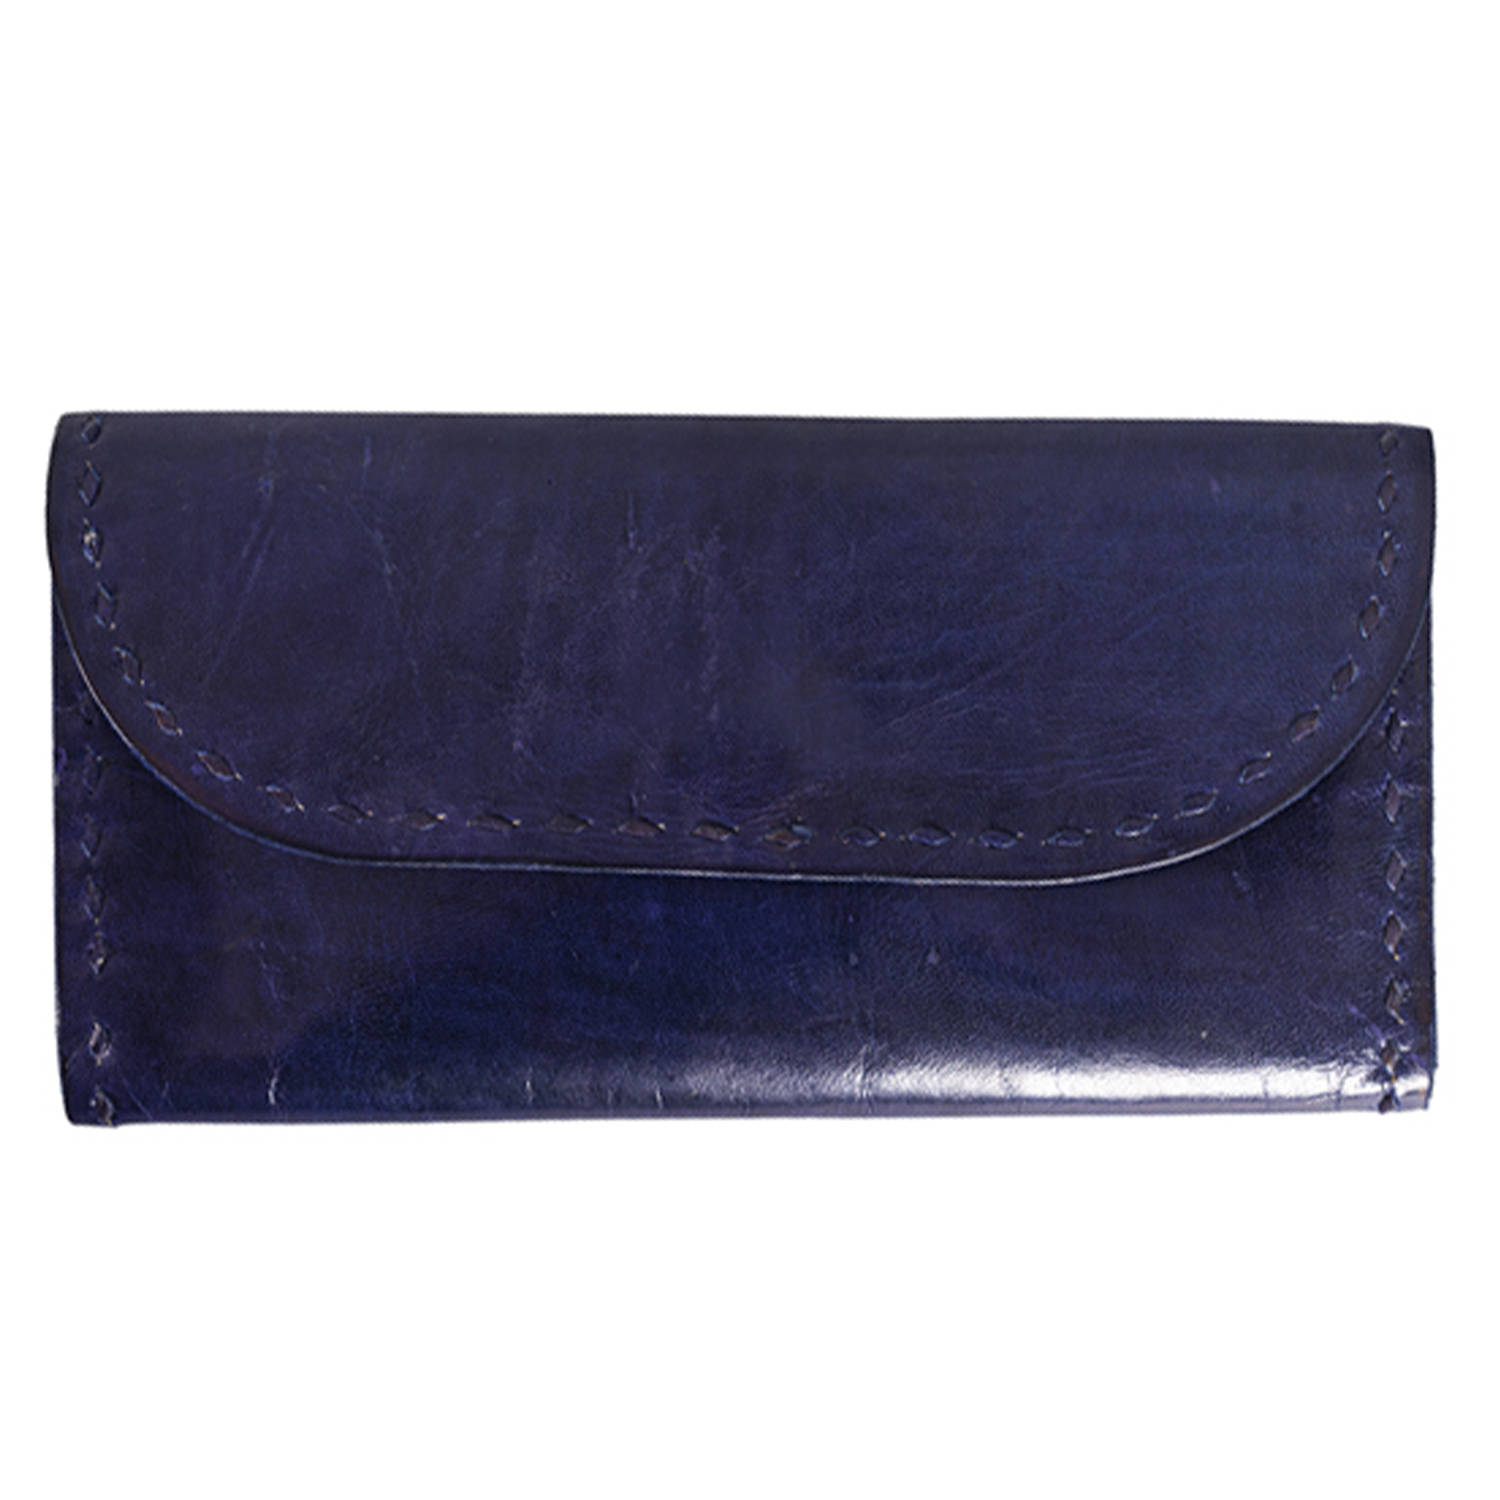 Vintage Nine & Co Purple/Plum Faux Leather Purse Shoulder Bag w/ Silver  Buckles | eBay